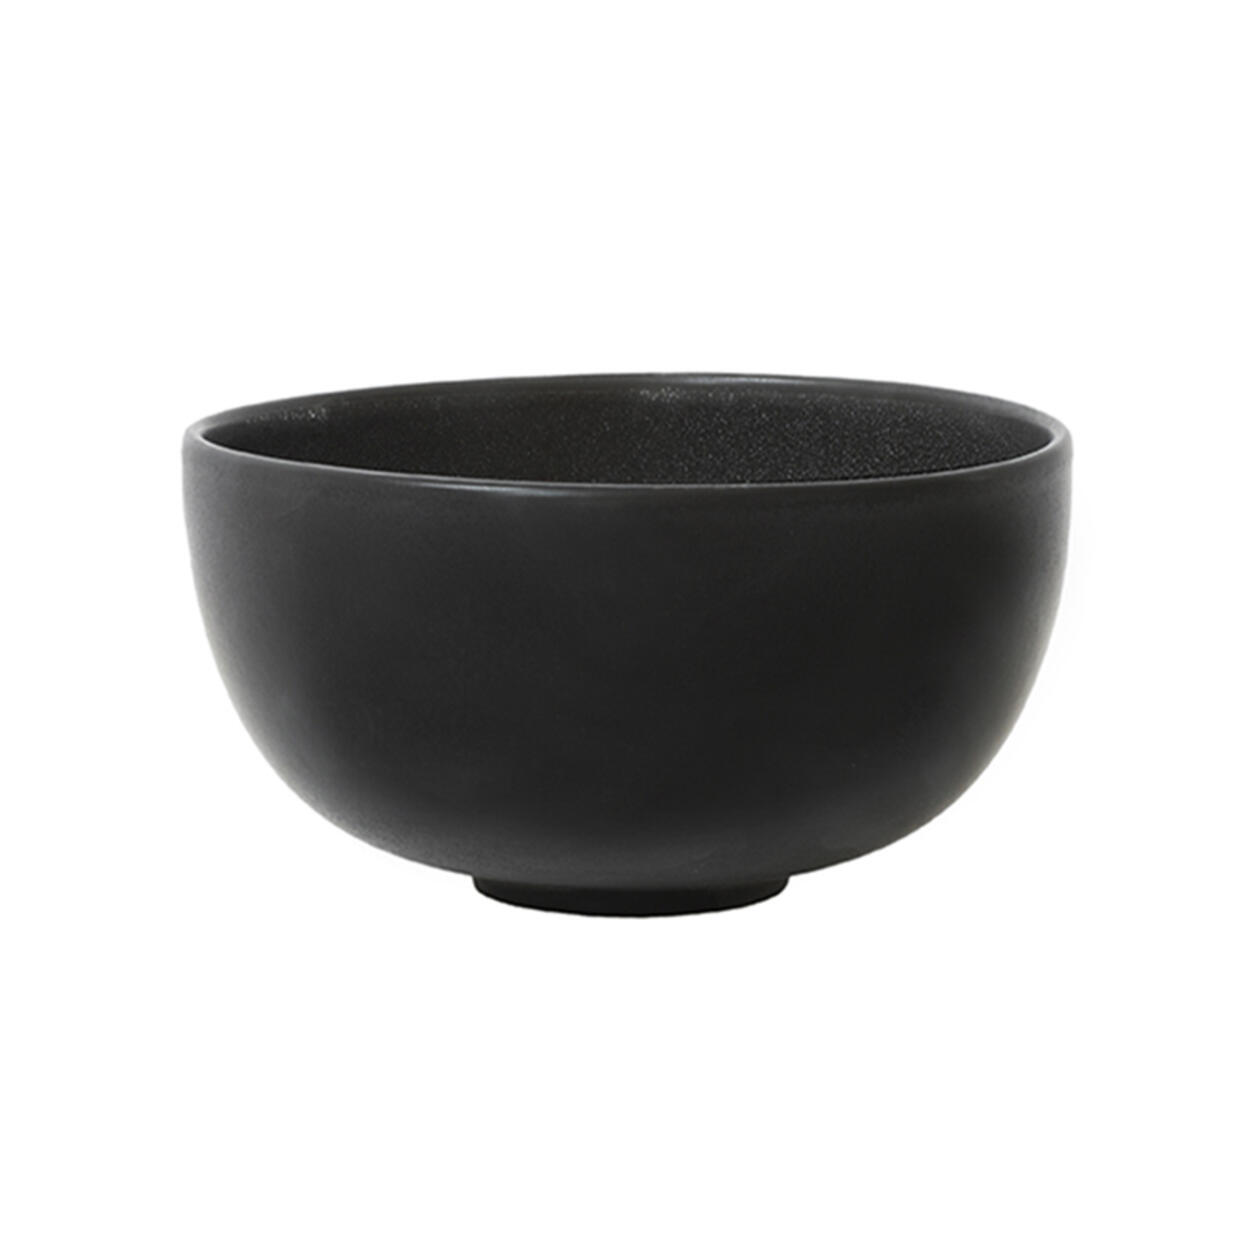 serving bowl s tourron céleste ceramic manufacturer